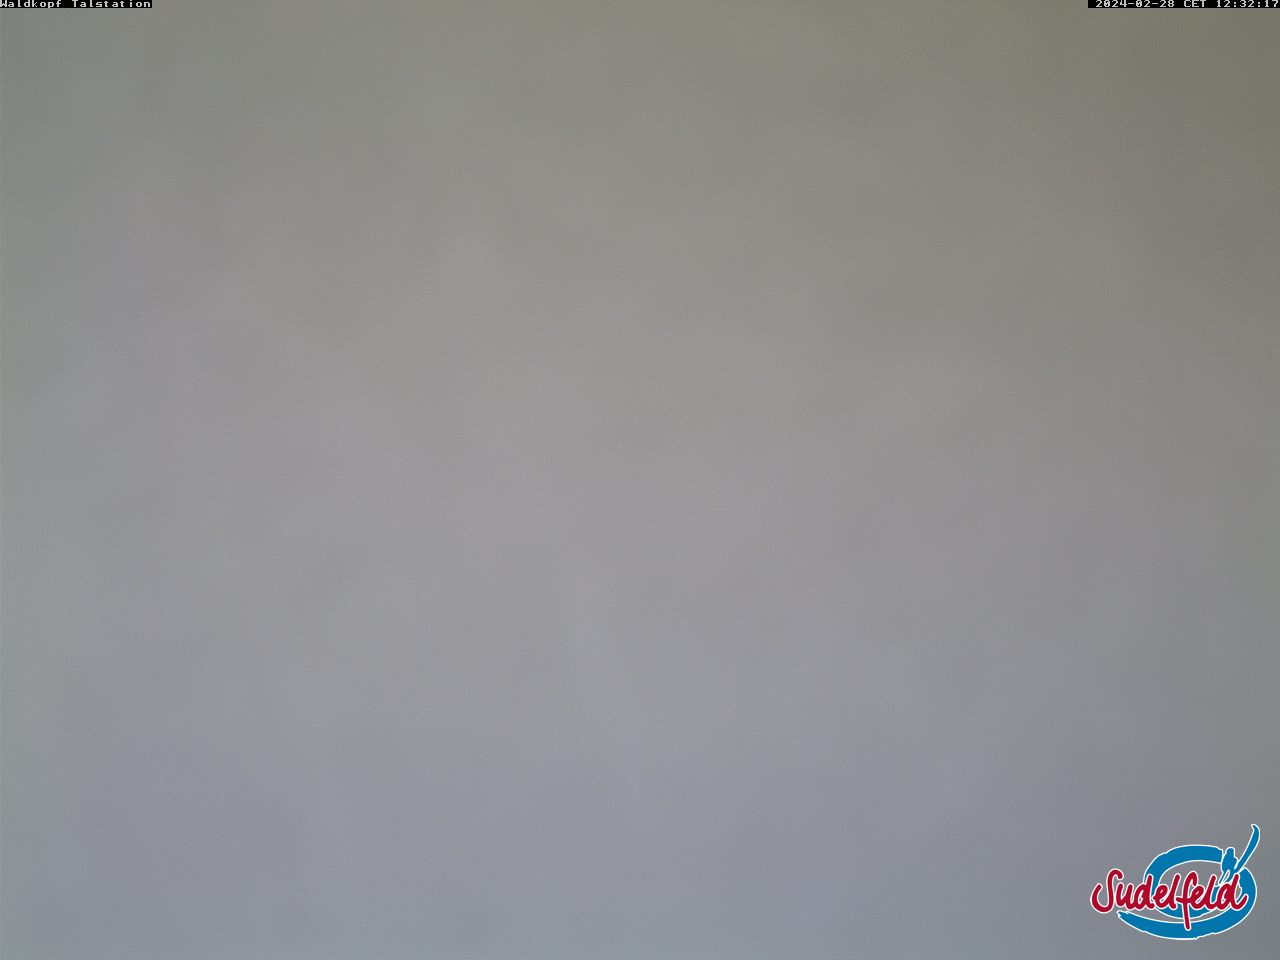 Webcam 